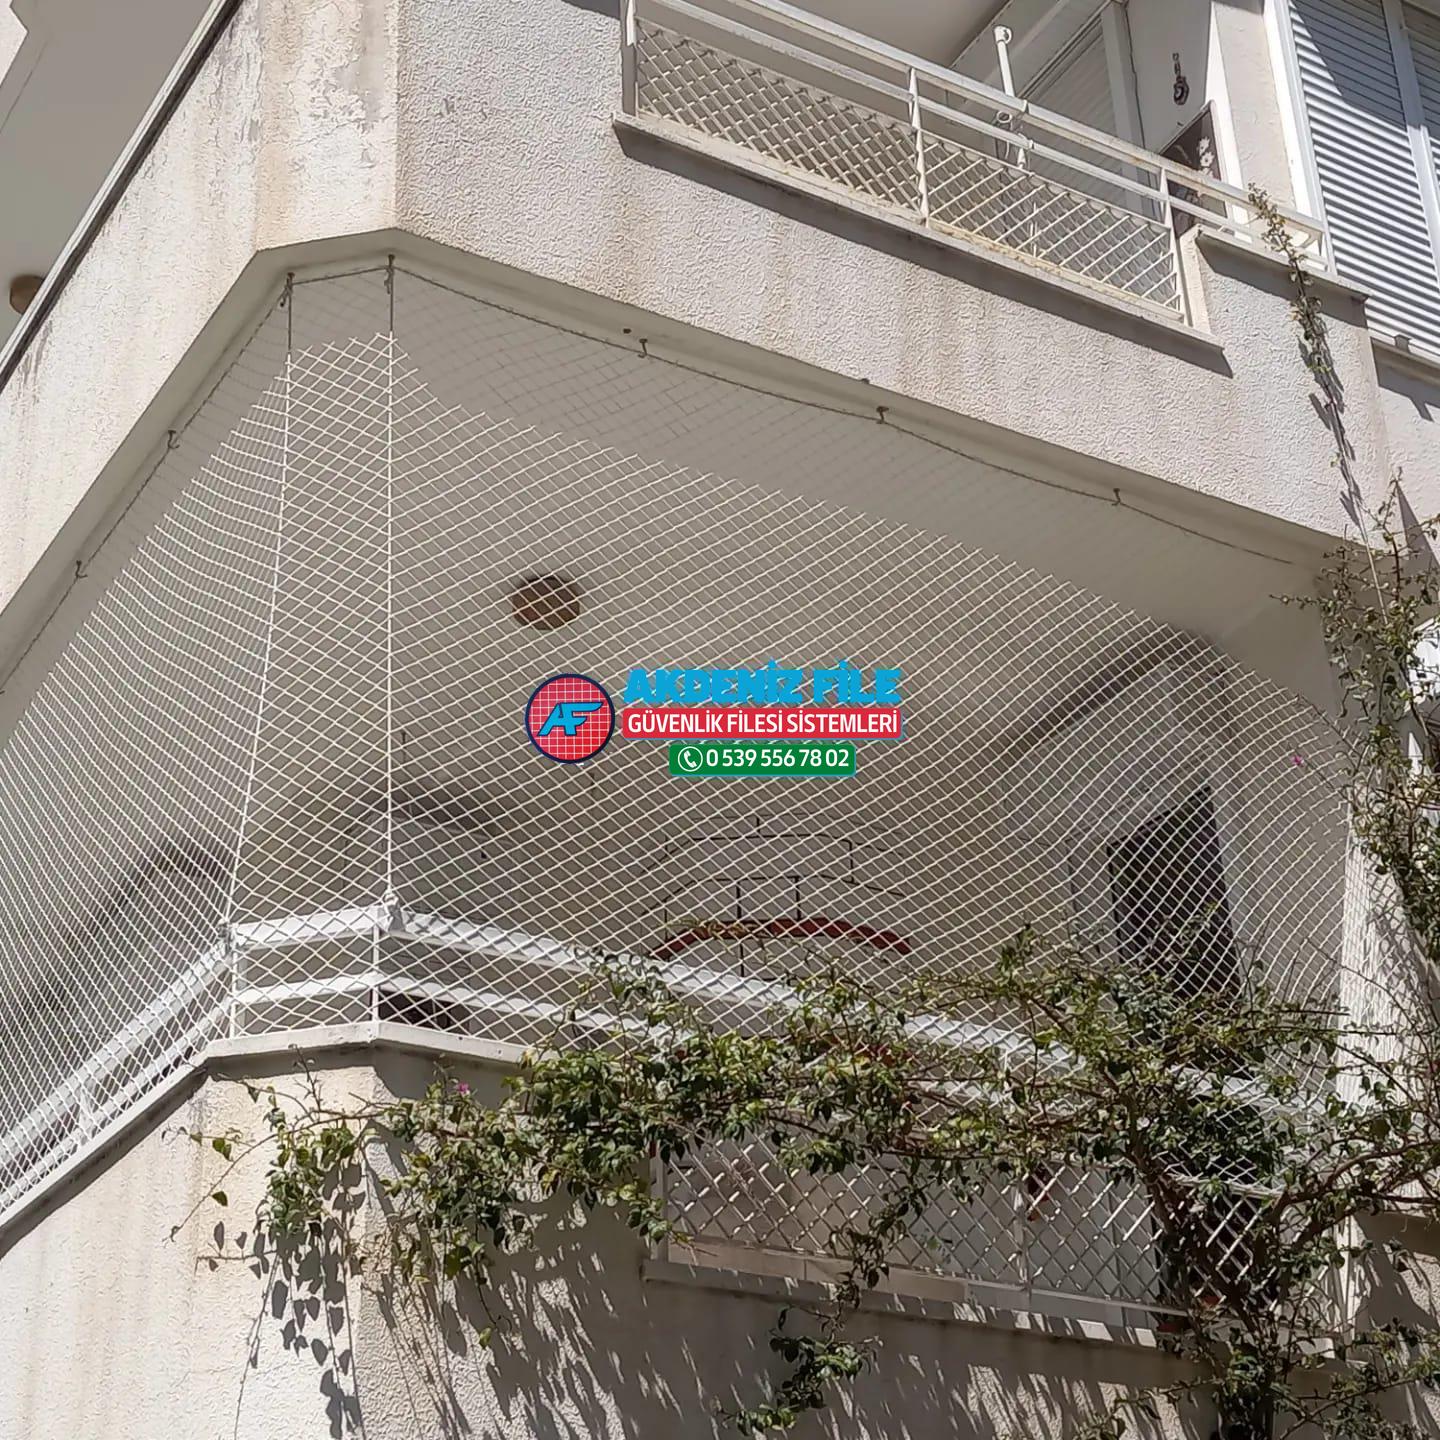 Antalya  Balkon için file, Balkon için güvenlik filesi 0539 556 78 02